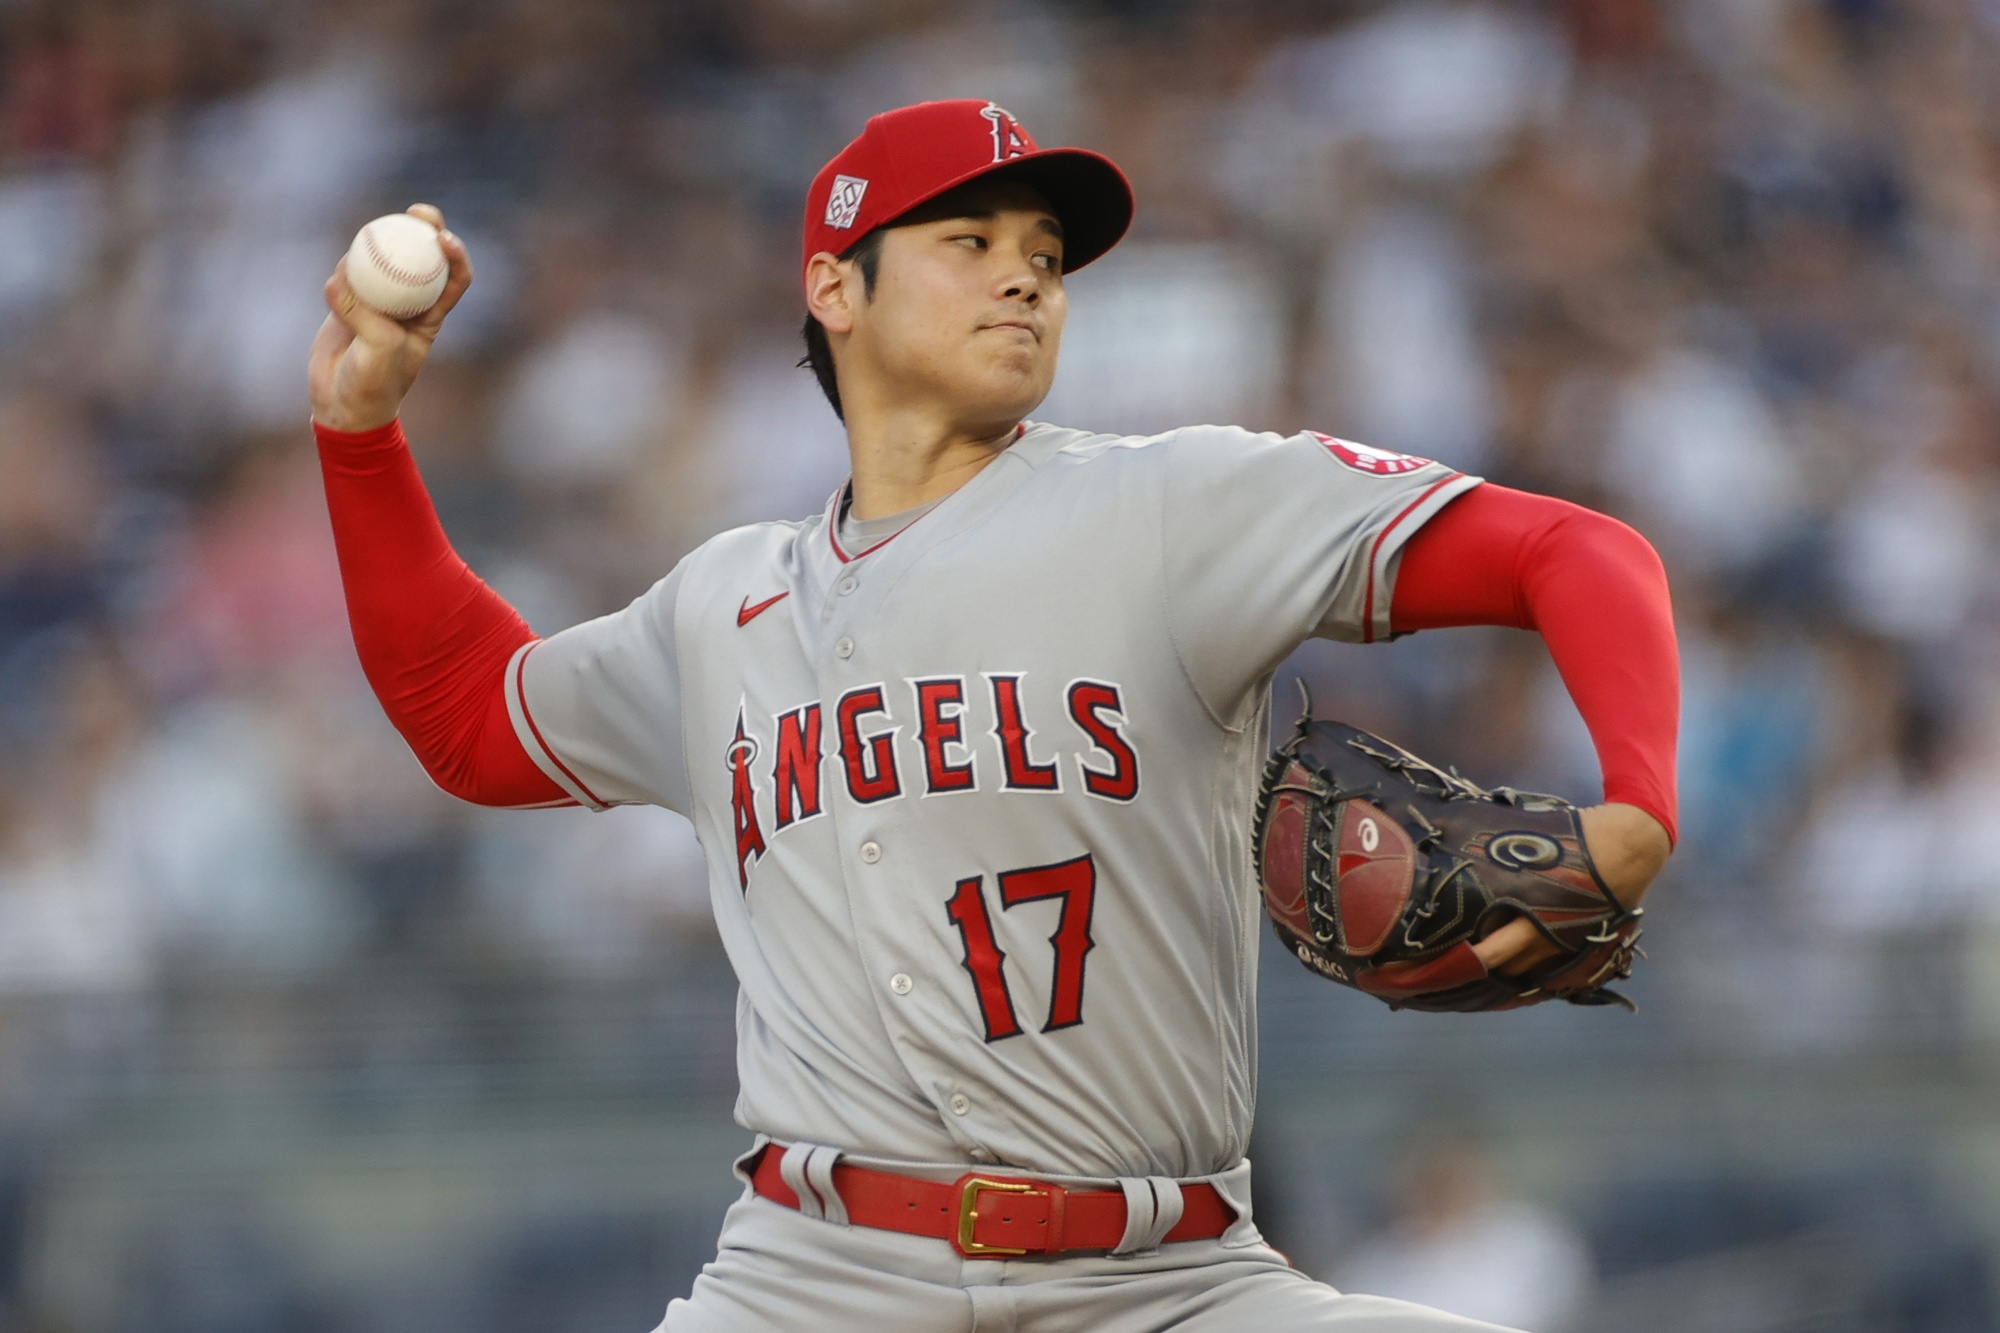 Ohtani's Baseball Skills Help His Sponsors Outperform Market - Bloomberg